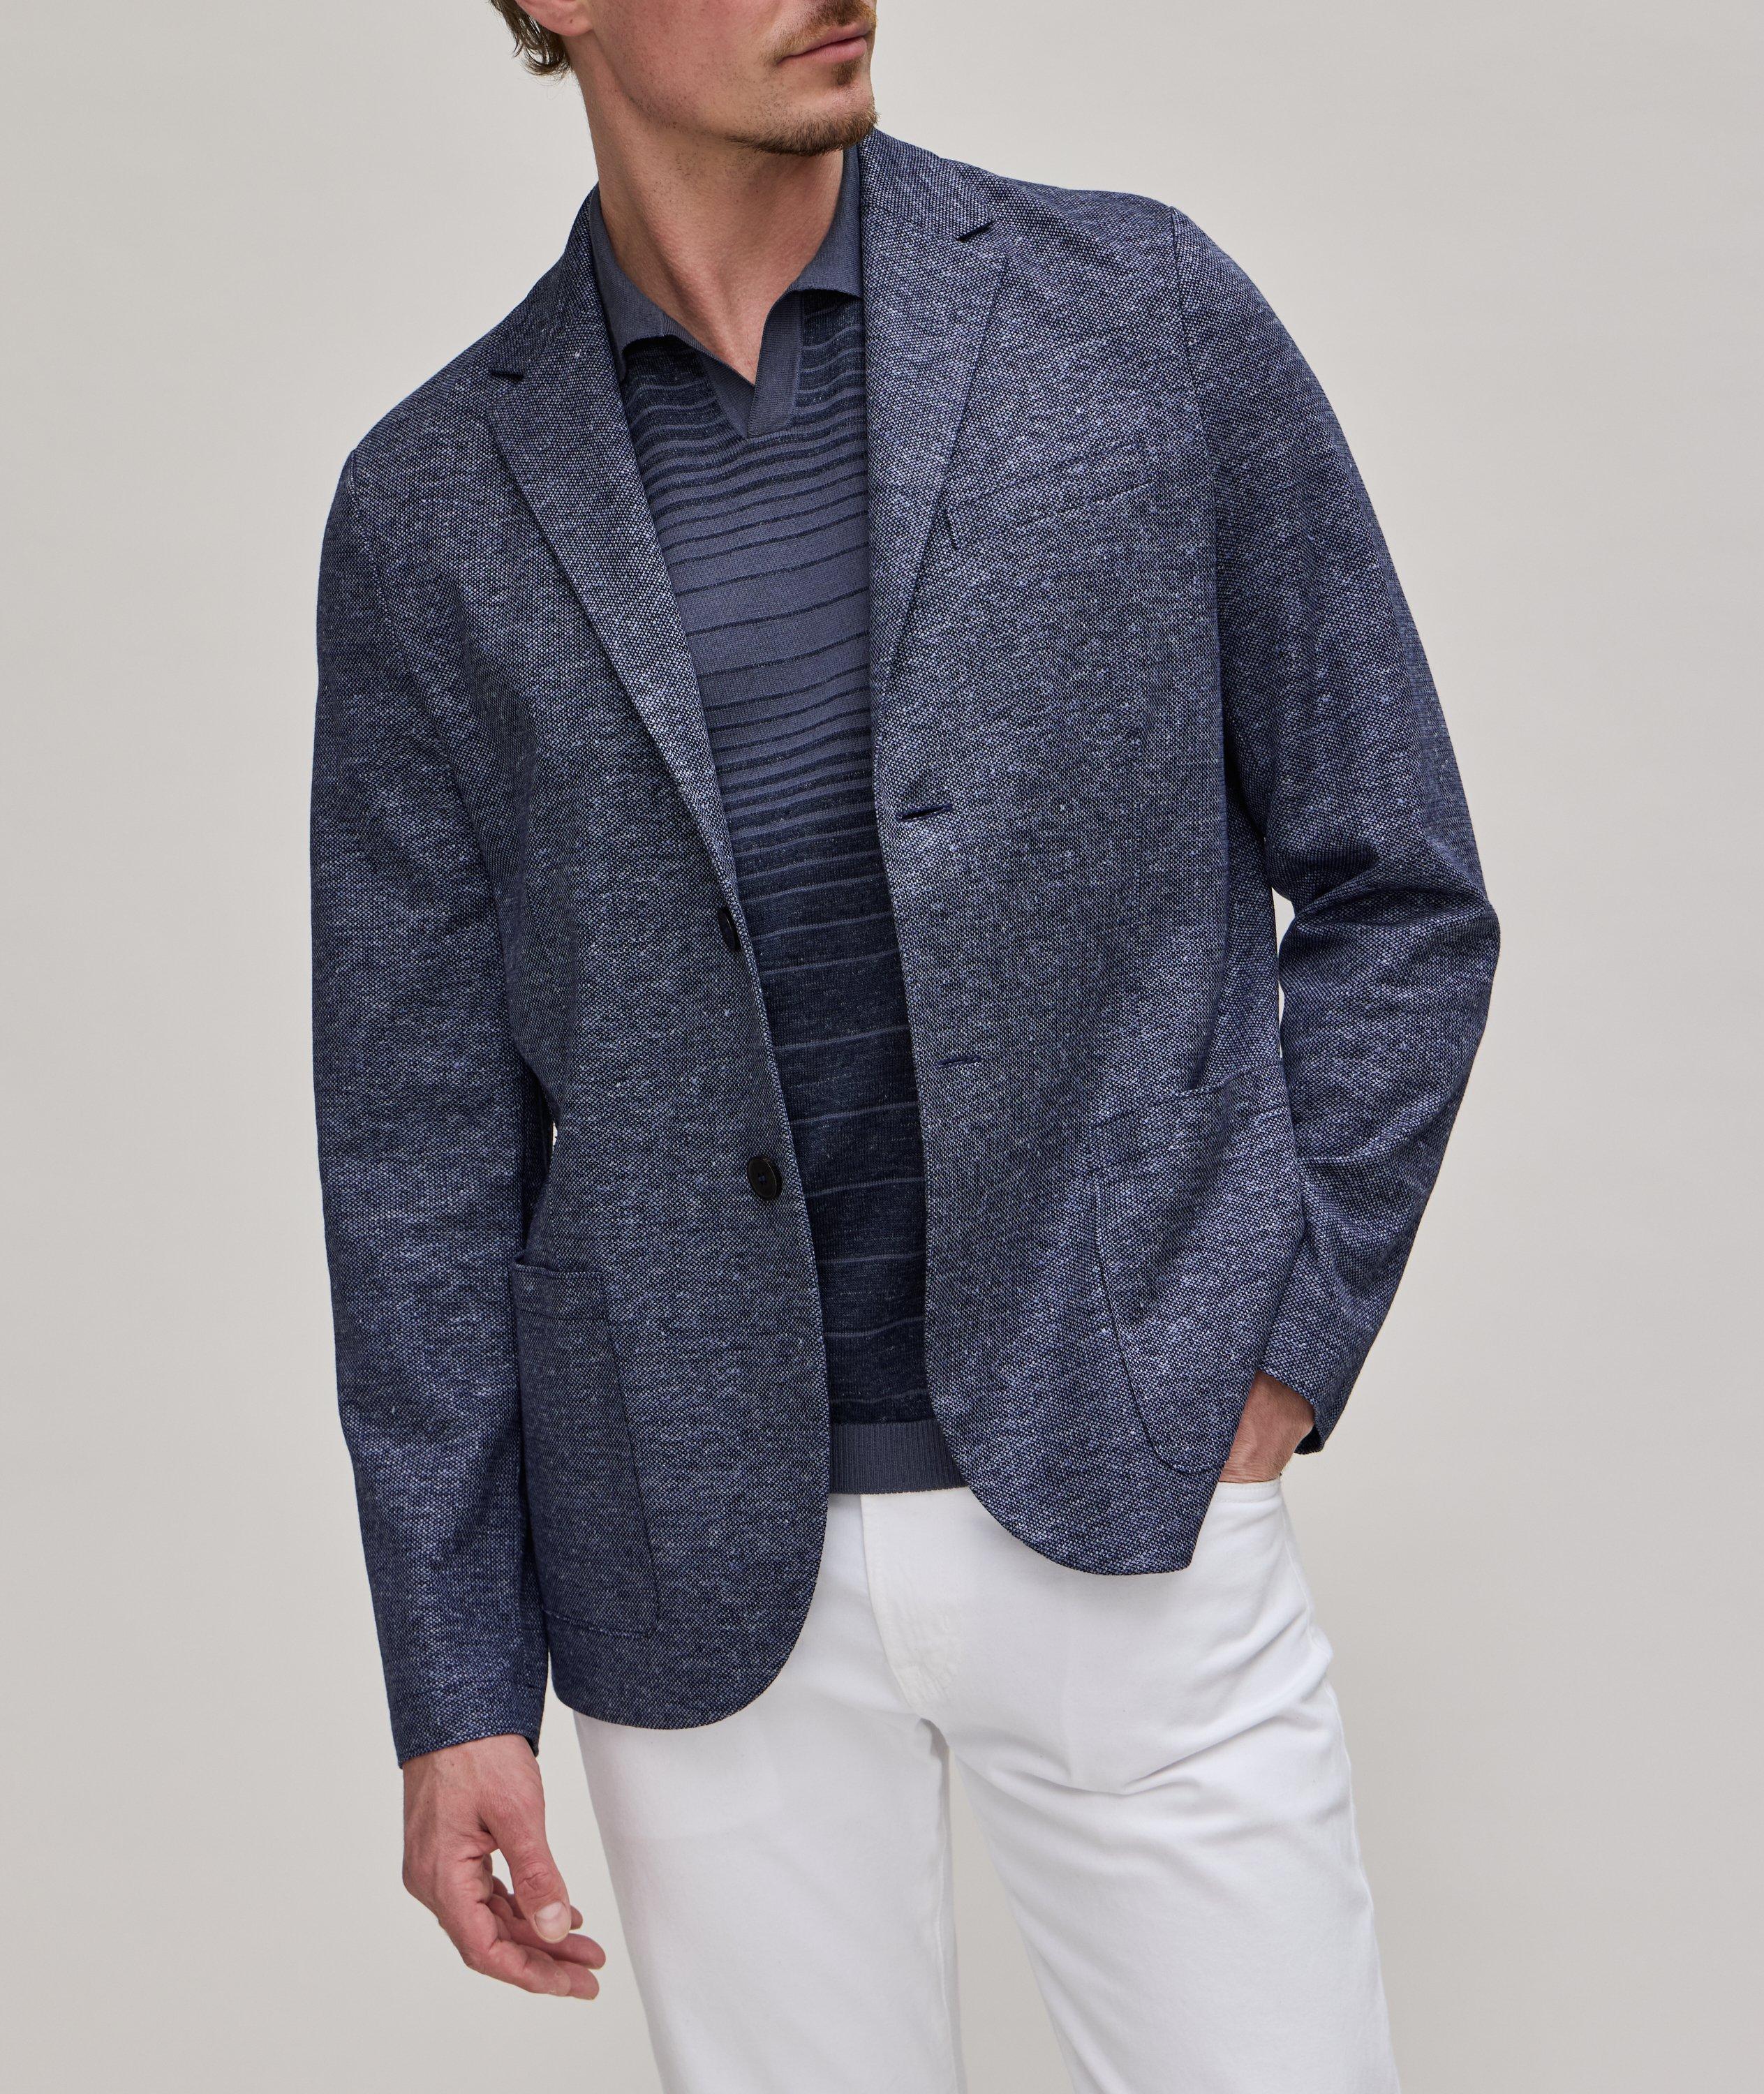 Textured Mélange Linen-Cotton Sport Jacket image 1